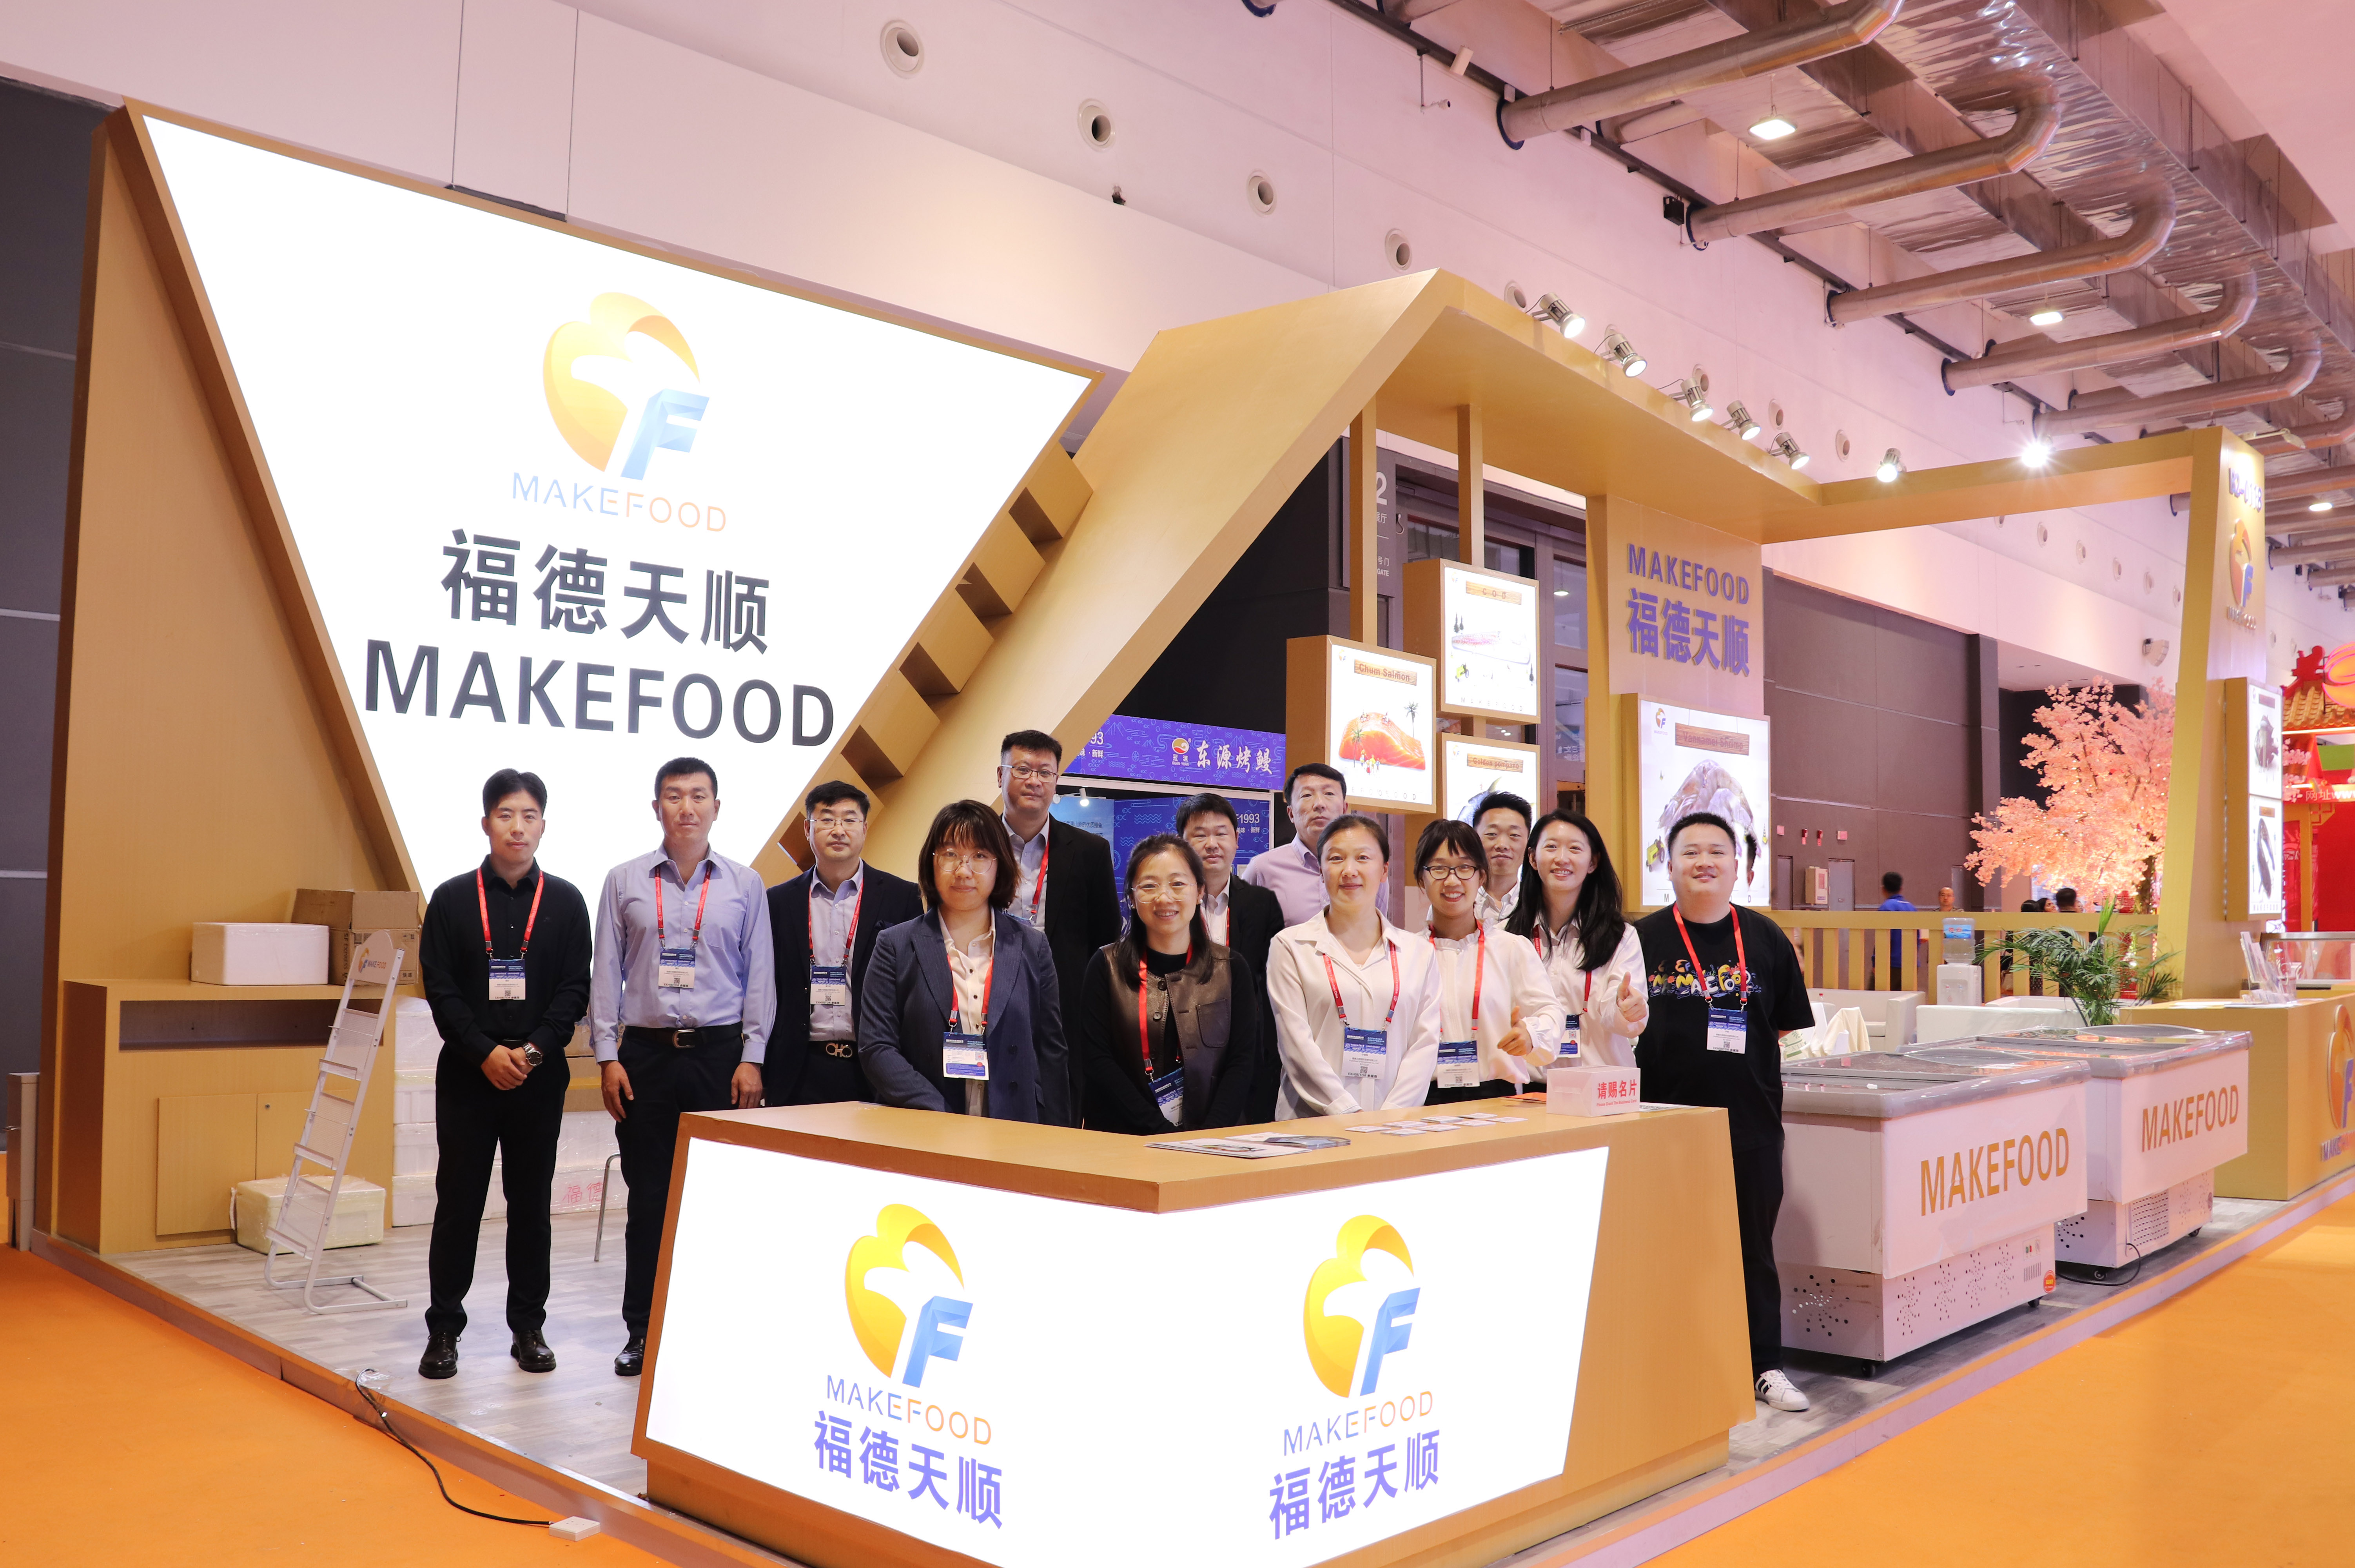 MAKEFOOD ໄດ້ສ້າງຮູບລັກສະນະທີ່ມະຫັດສະຈັນຢູ່ໃນ Qingdao Maritime Expo ເພື່ອປຶກສາຫາລືການປະດິດສ້າງອຸດສາຫະກໍາແລະການພັດທະນາແບບຍືນຍົງ